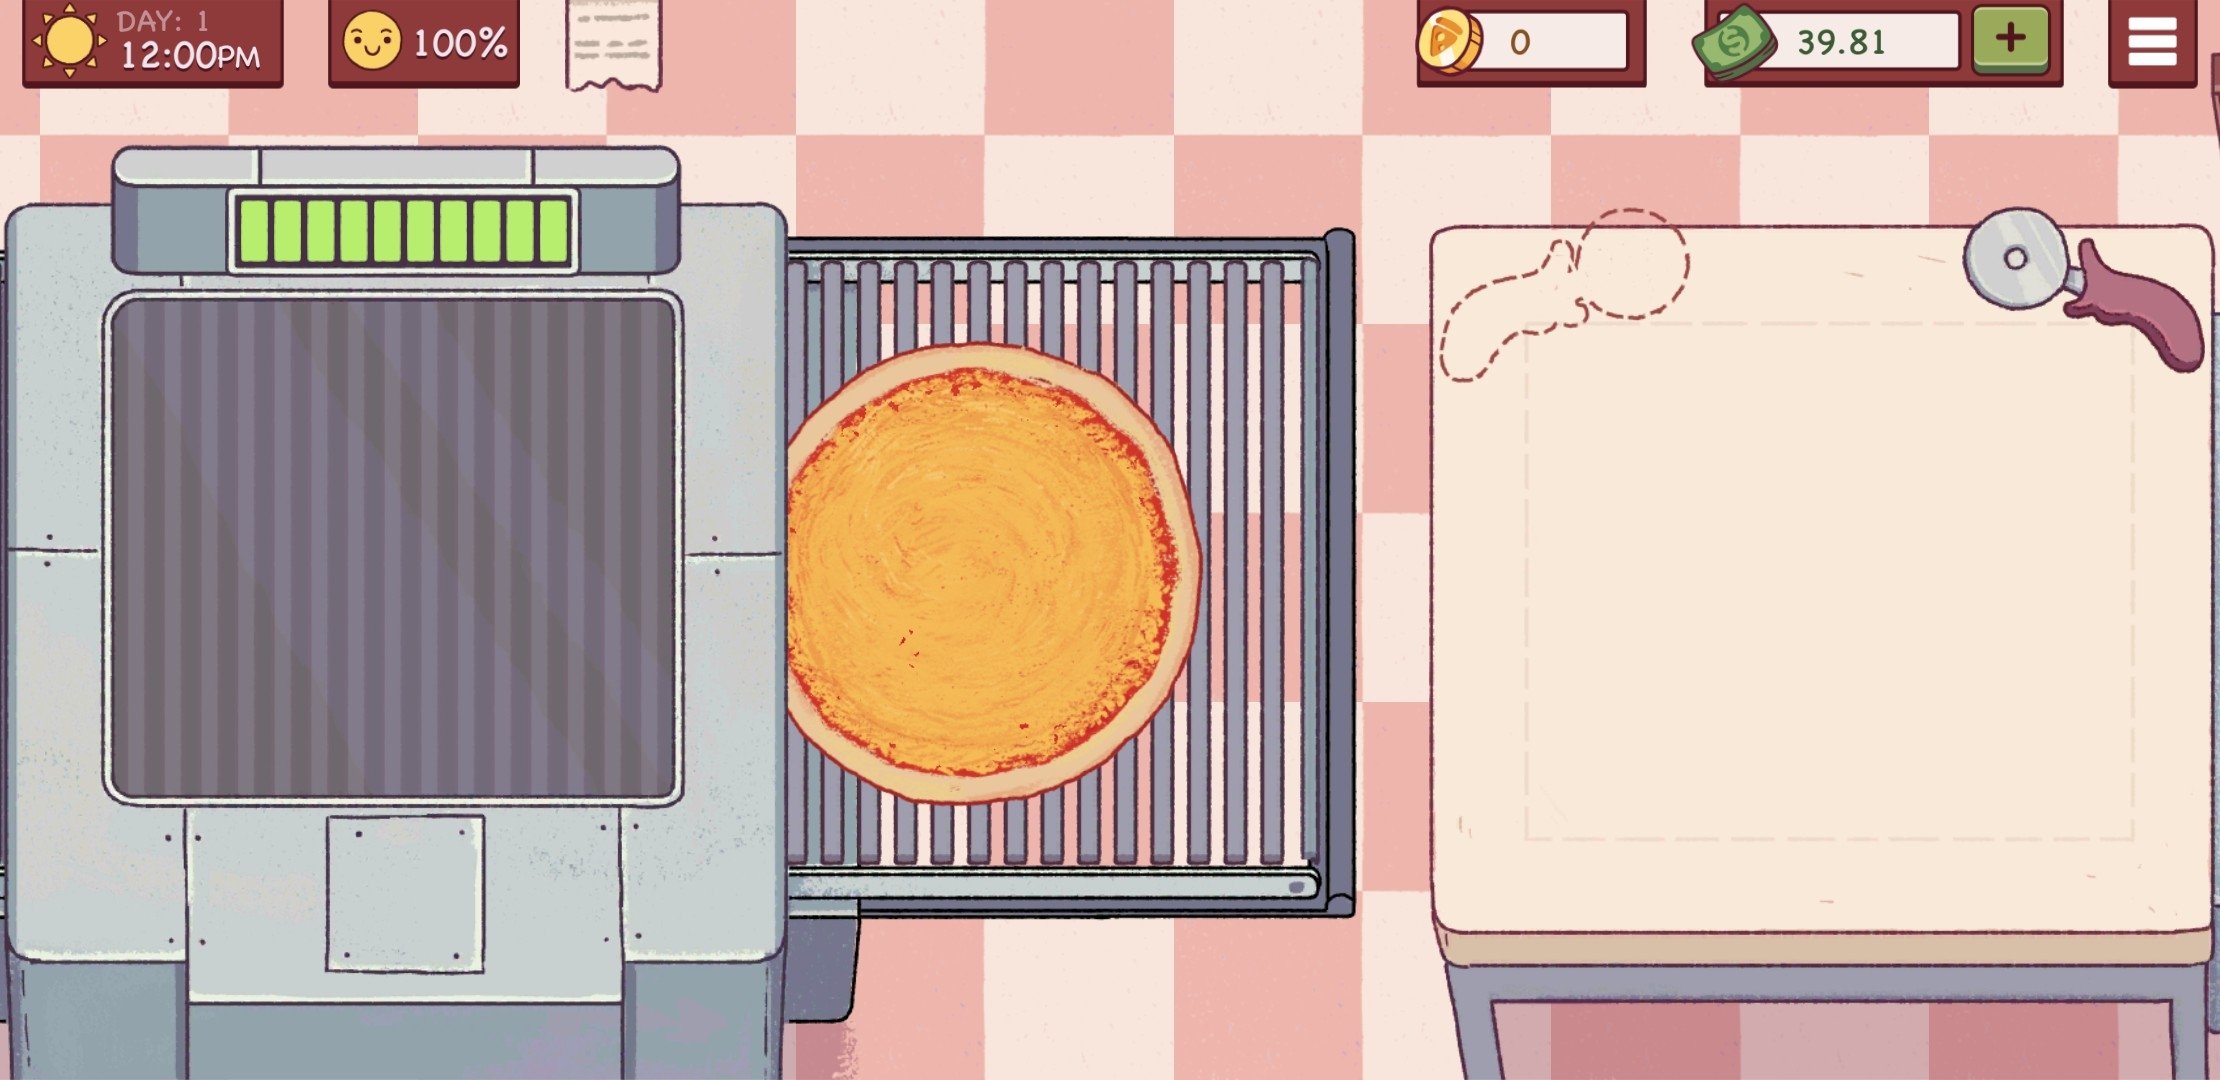 Фото бомжика из игры хорошая пицца отличная пицца